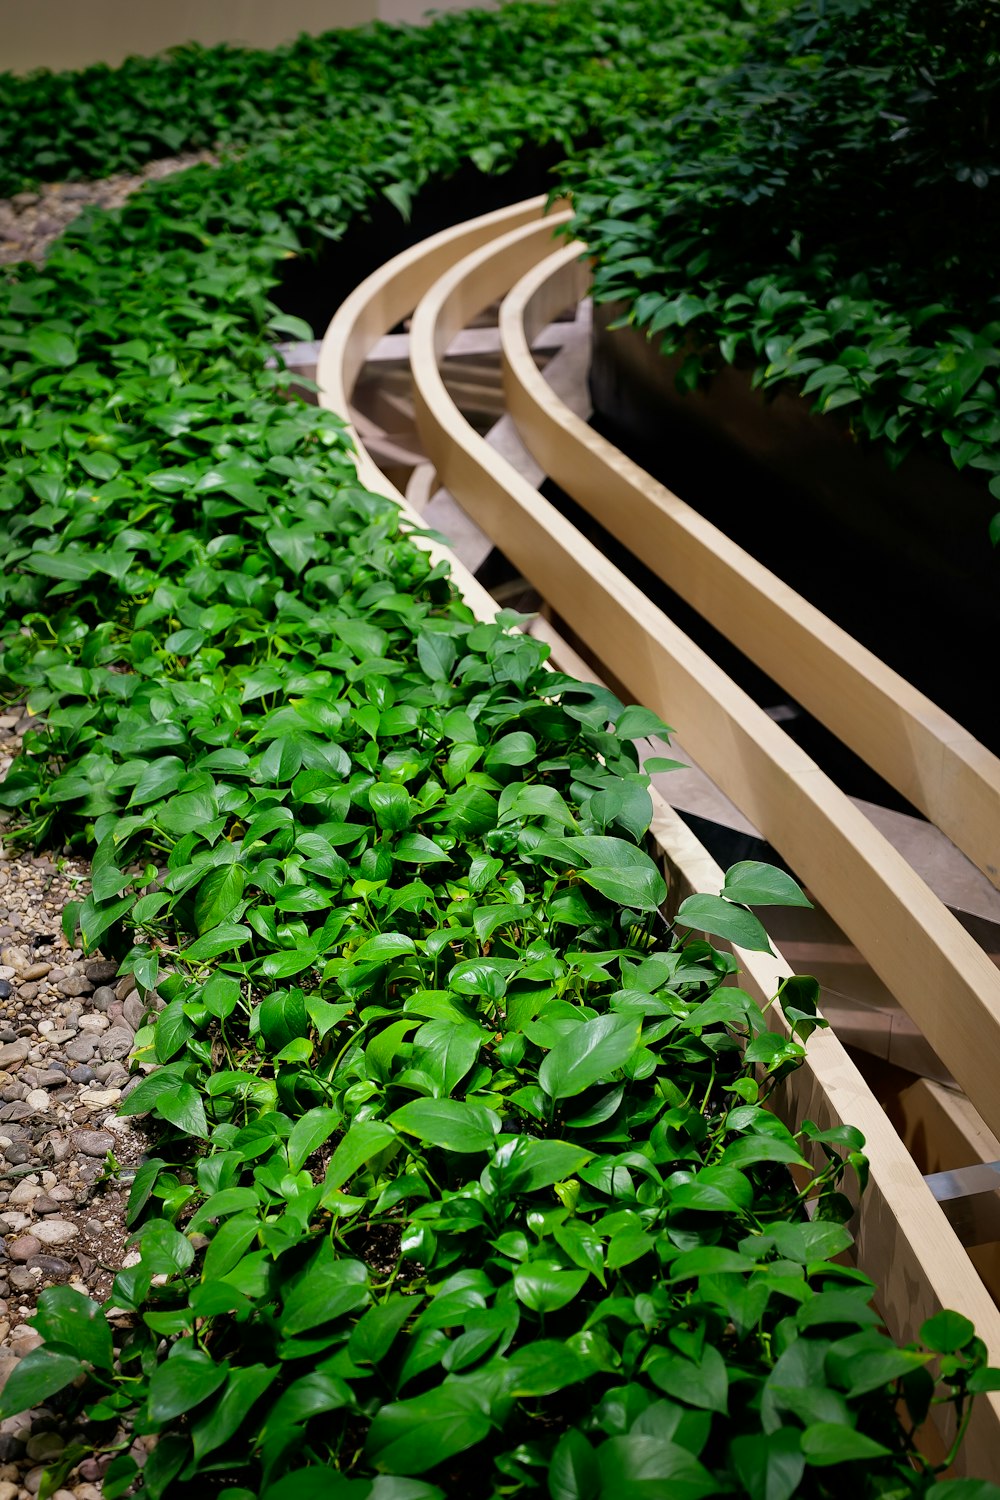 a train track running through a lush green field